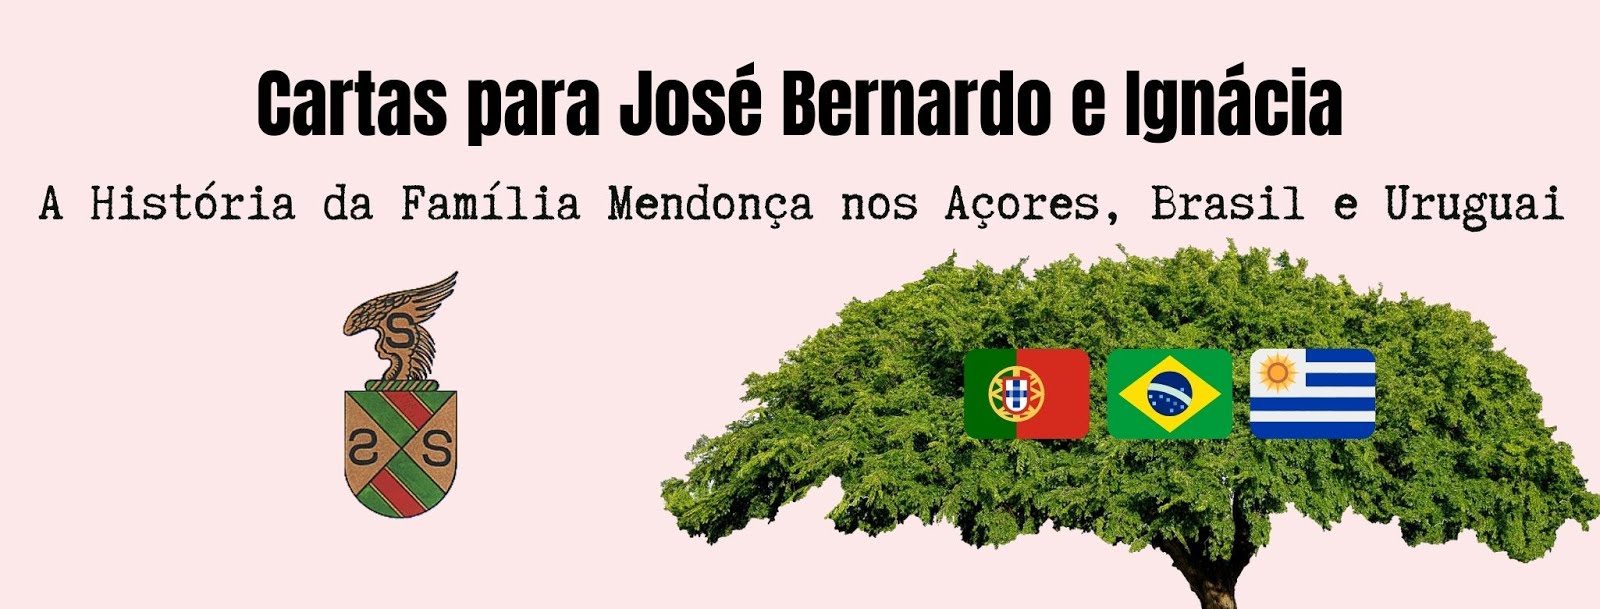 Cartas para José Bernardo e Ignácia 